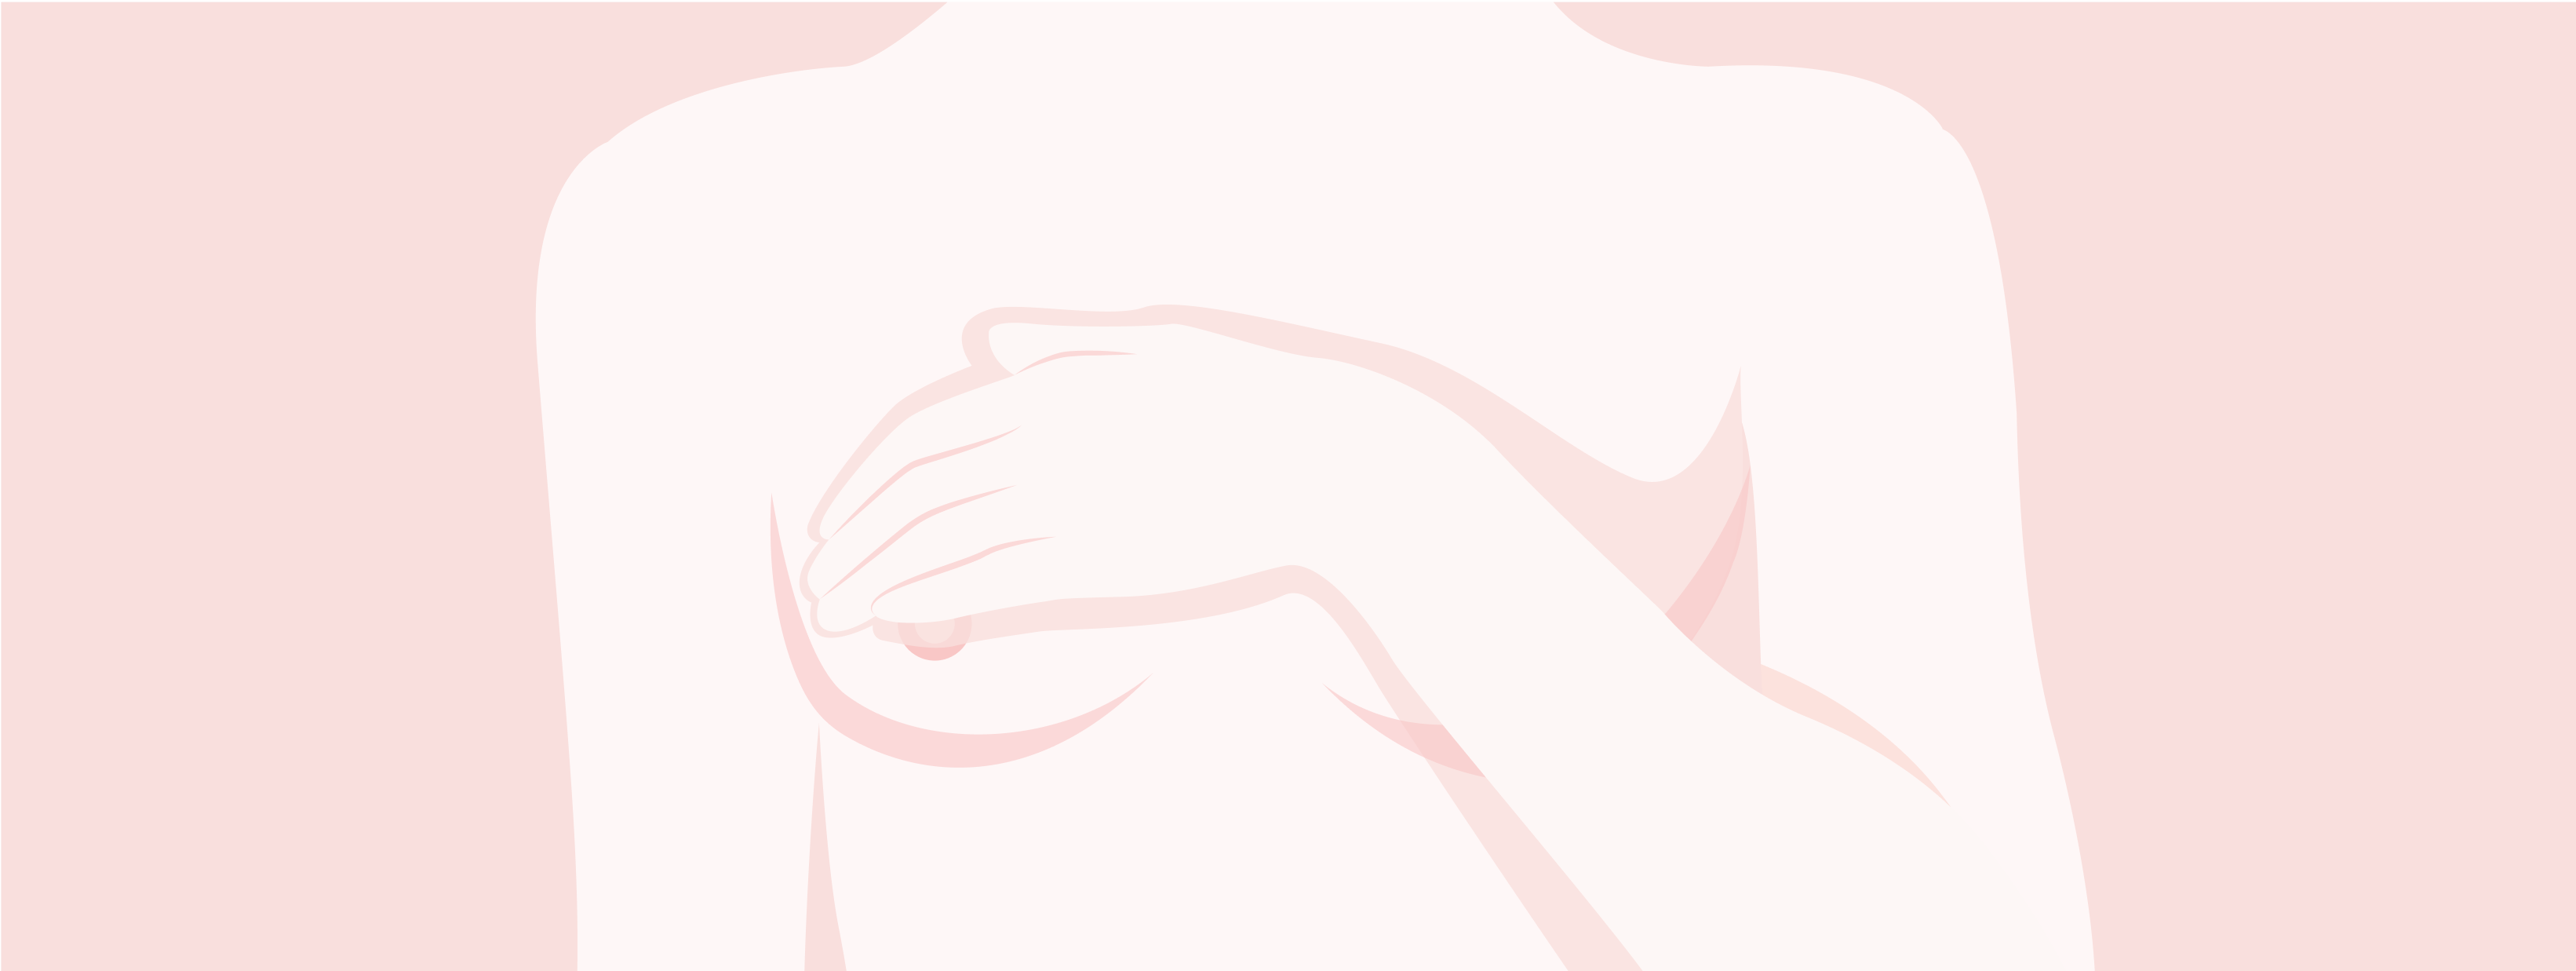 Illustrazione della parte superiore del corpo femminile. Donna che tiene una mano sul seno.